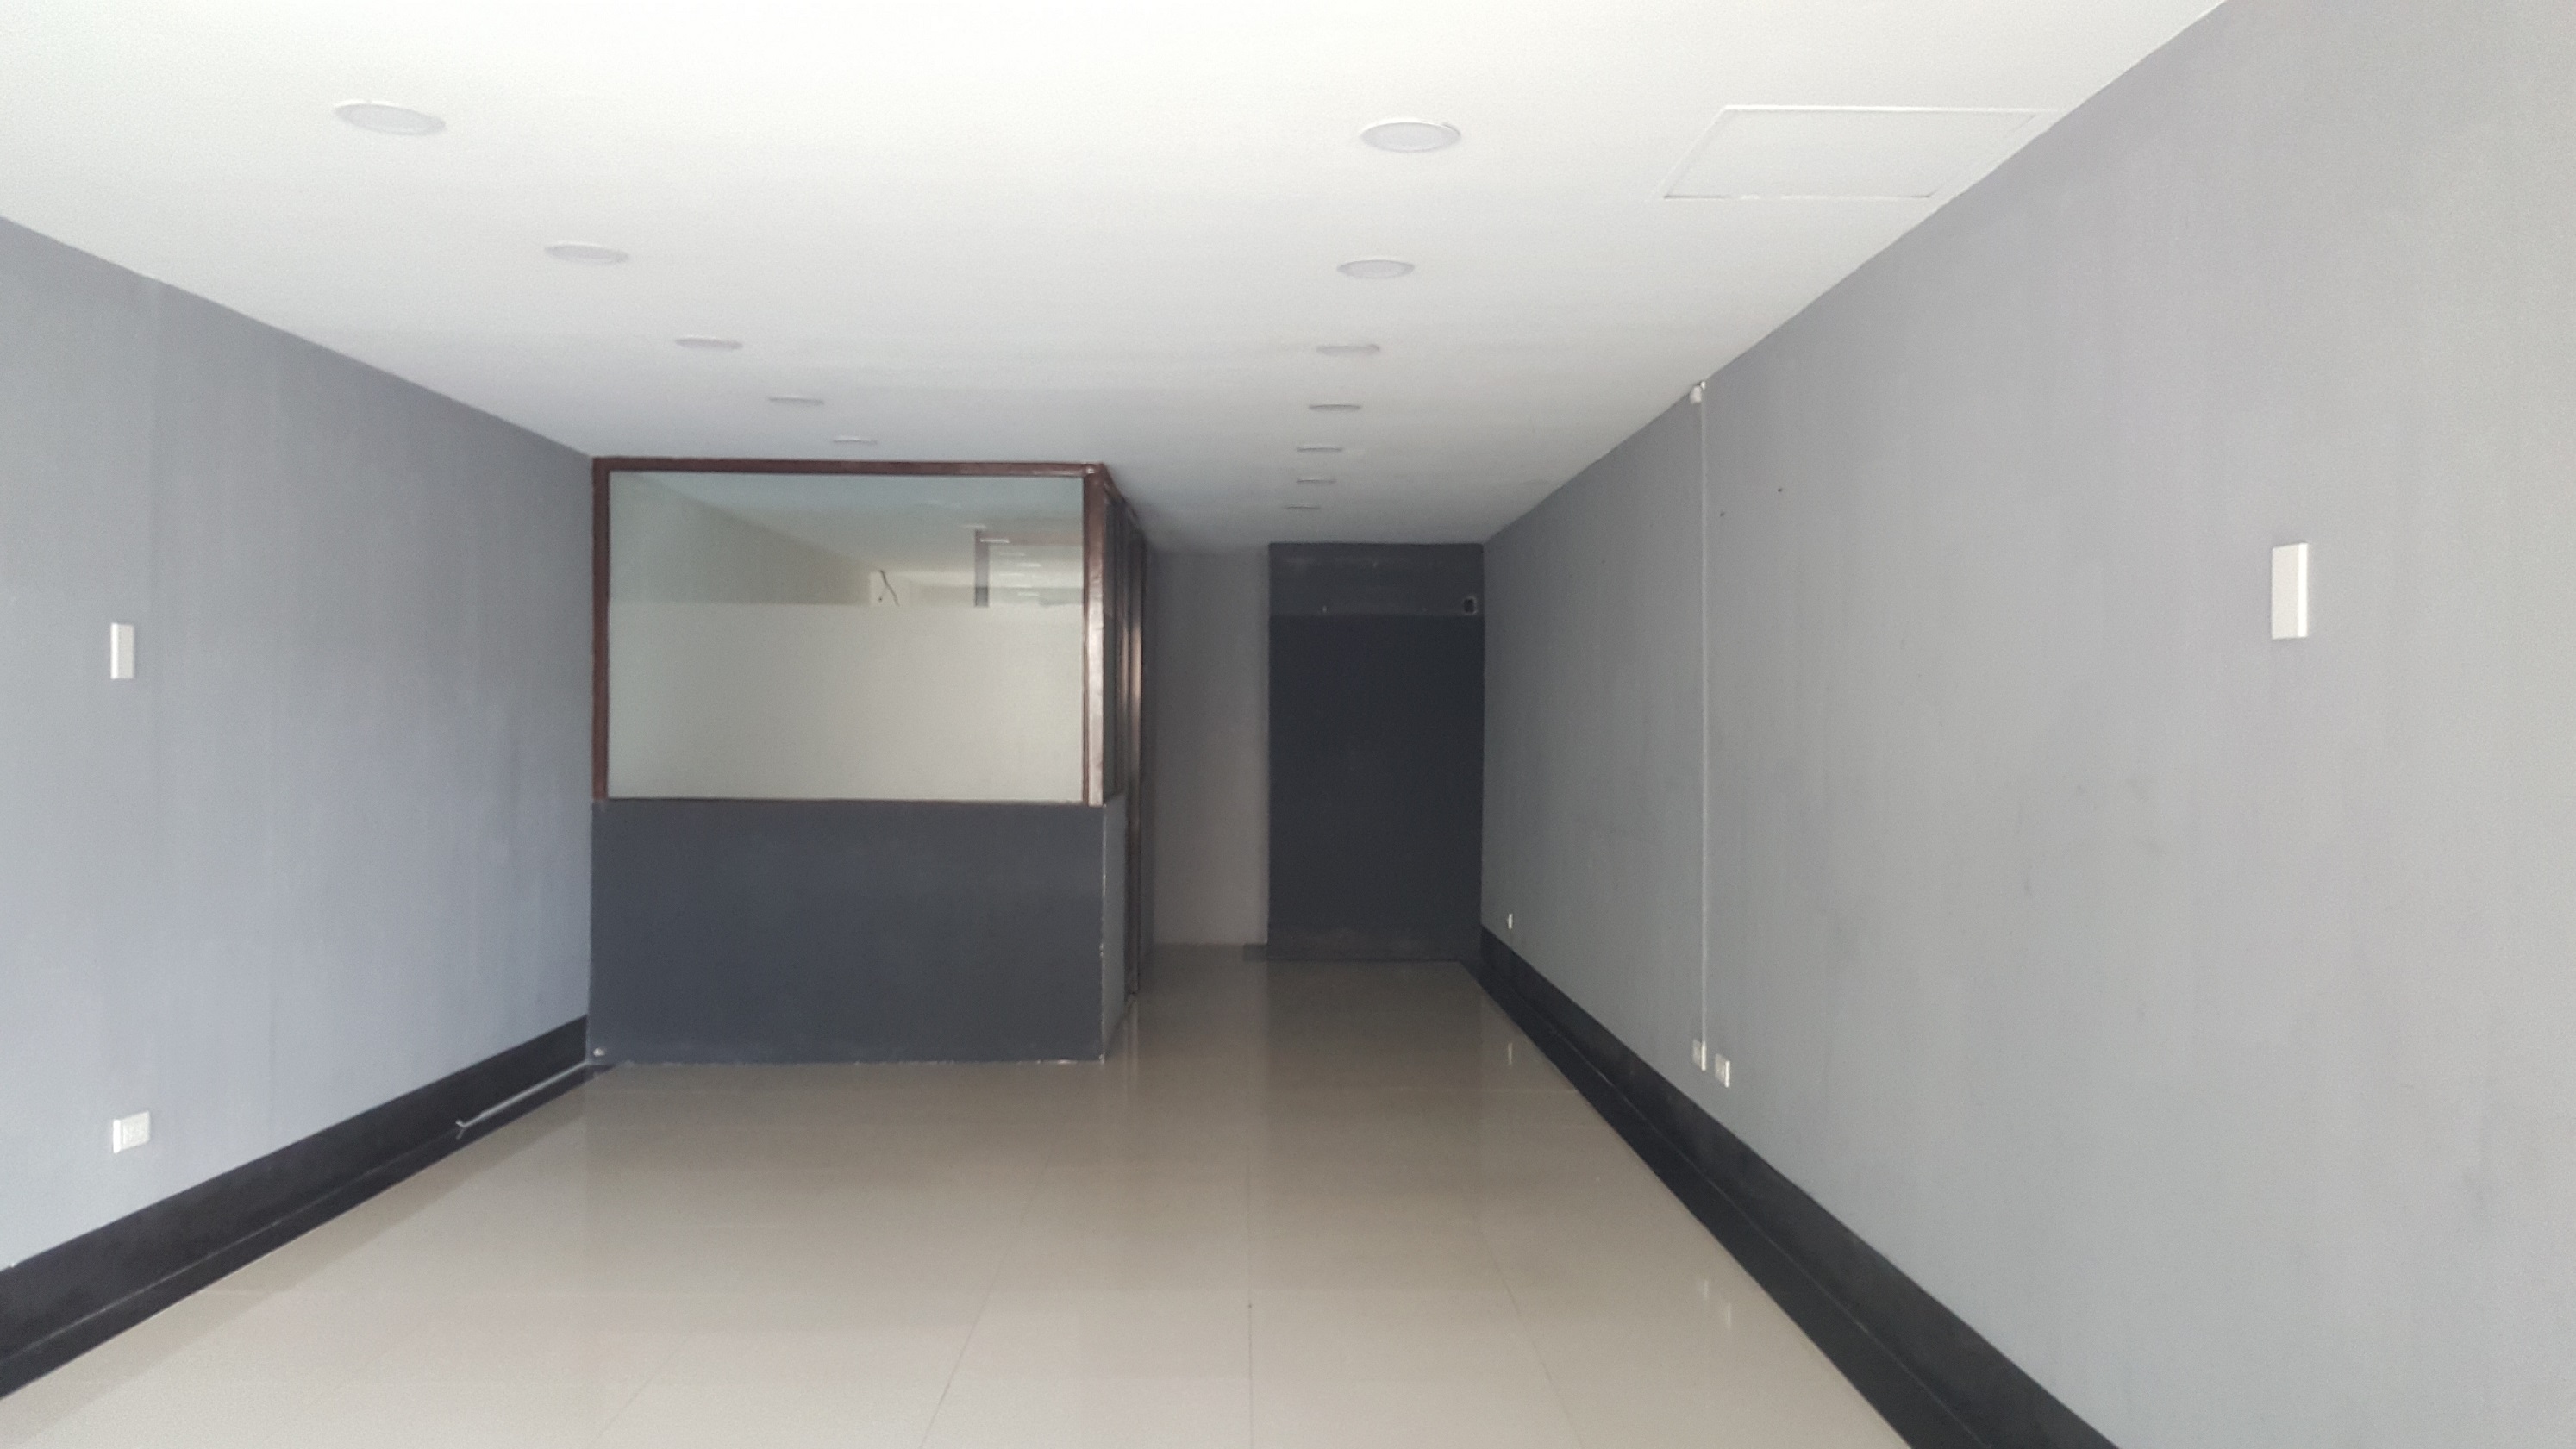  Office Space in Gorordo Cebu City 55 Square Meters Ground Floor